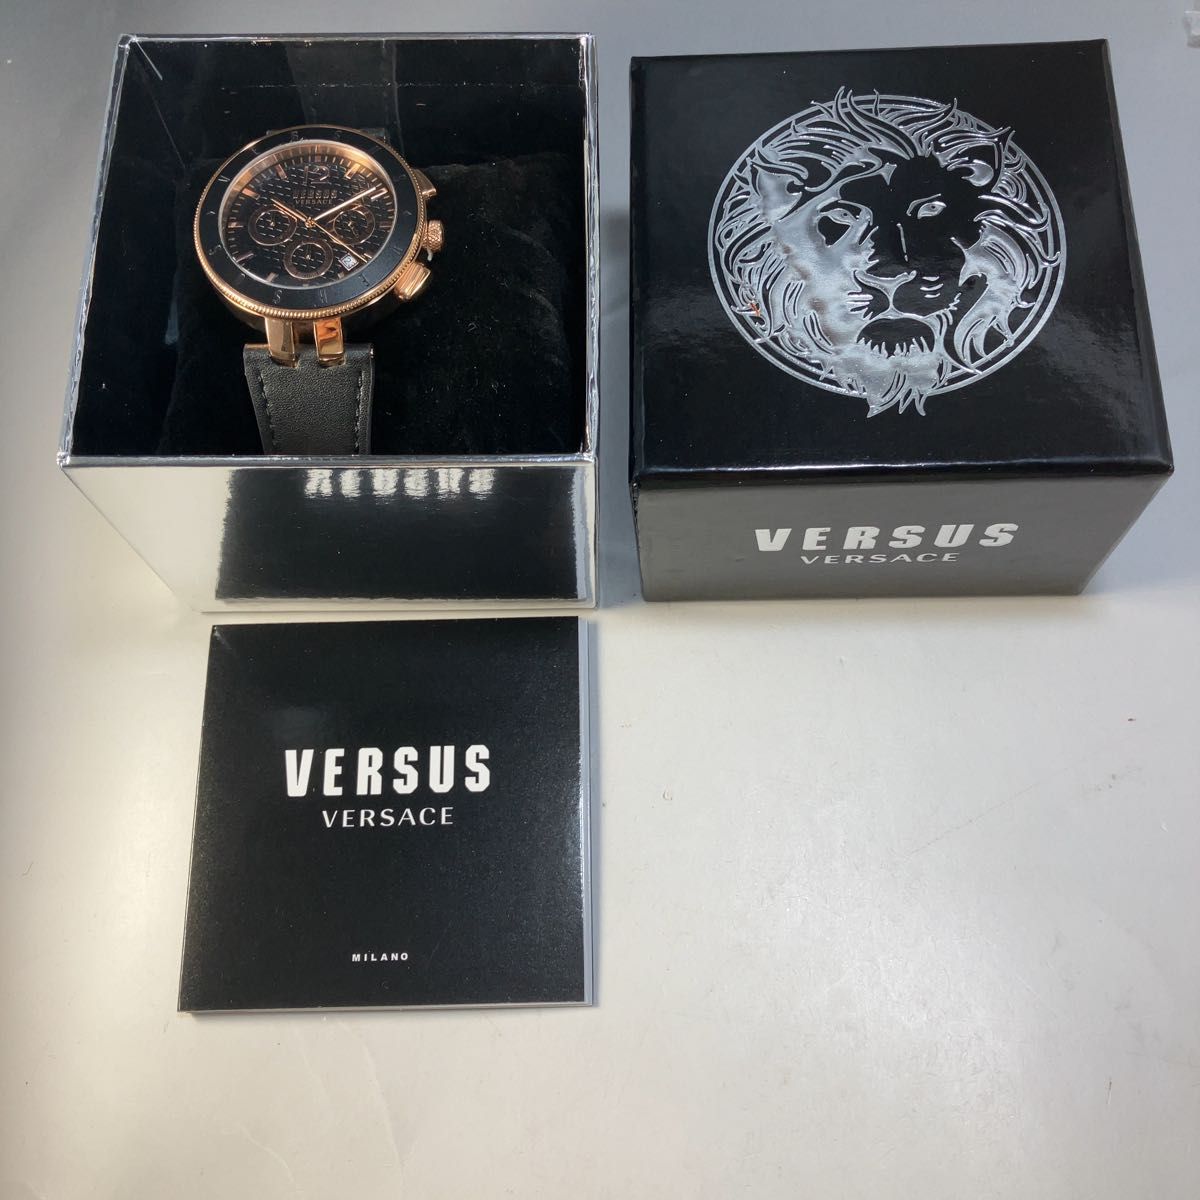 新品メンズウォッチ海外ブランド男性用腕時計 ヴェルサーチェ Versus クロノ